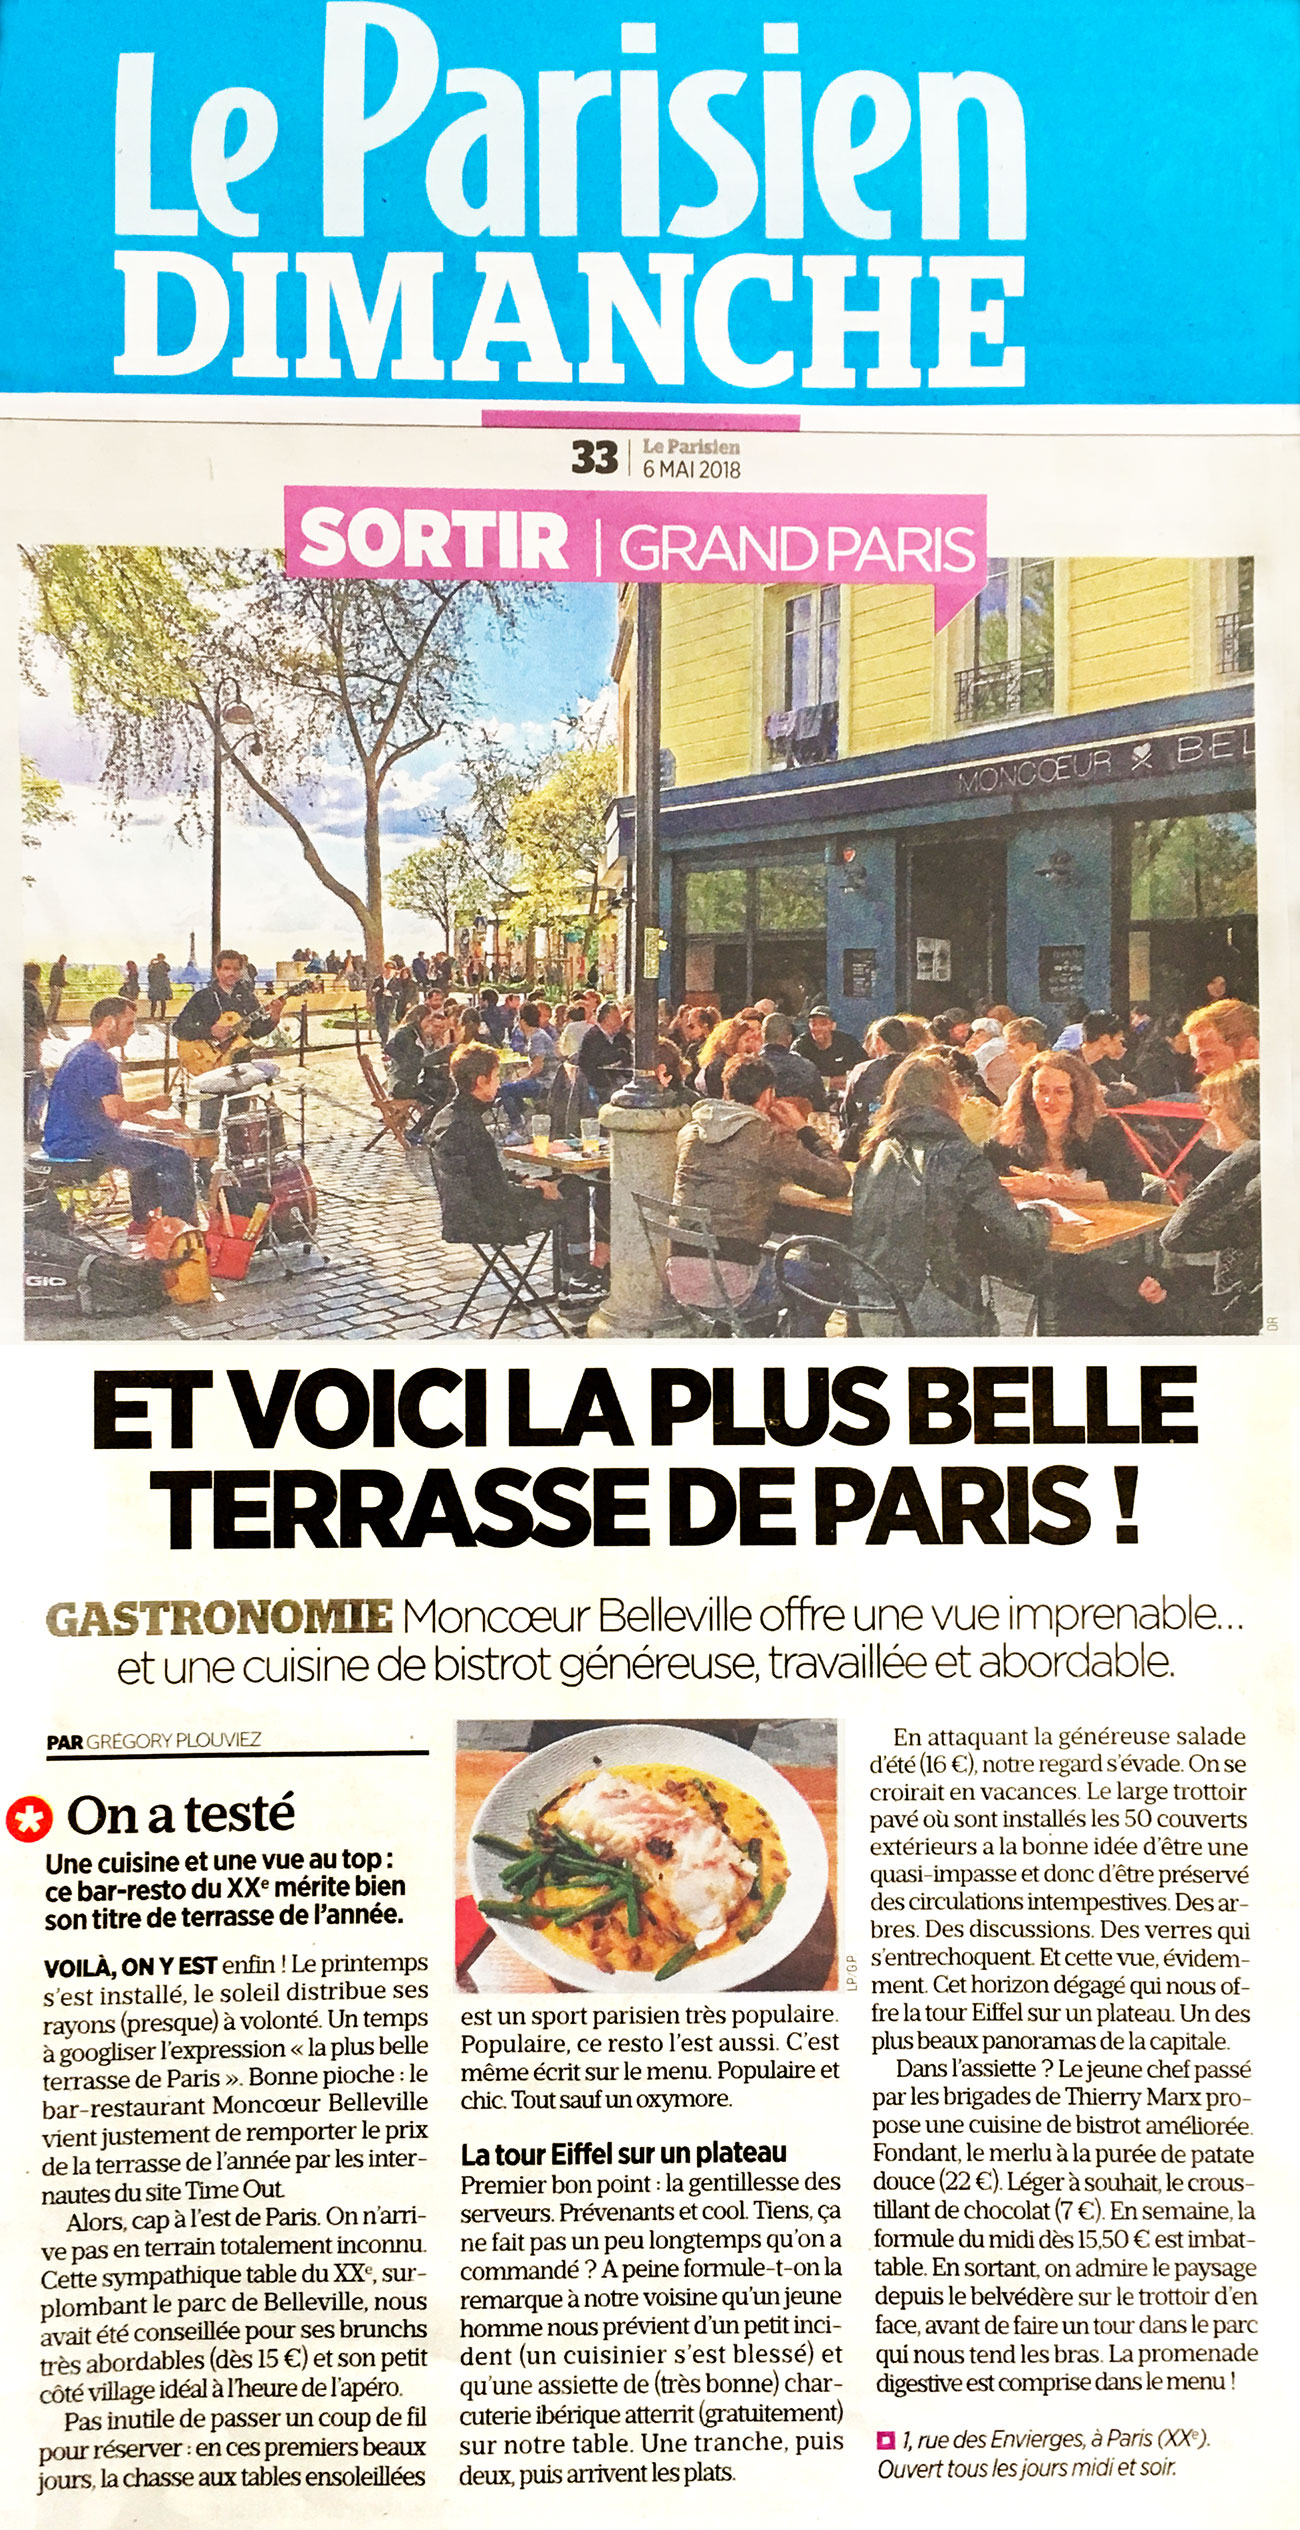 plus-belle-terrasse-paris-restaurant-moncoeur-belleville-le-parisien